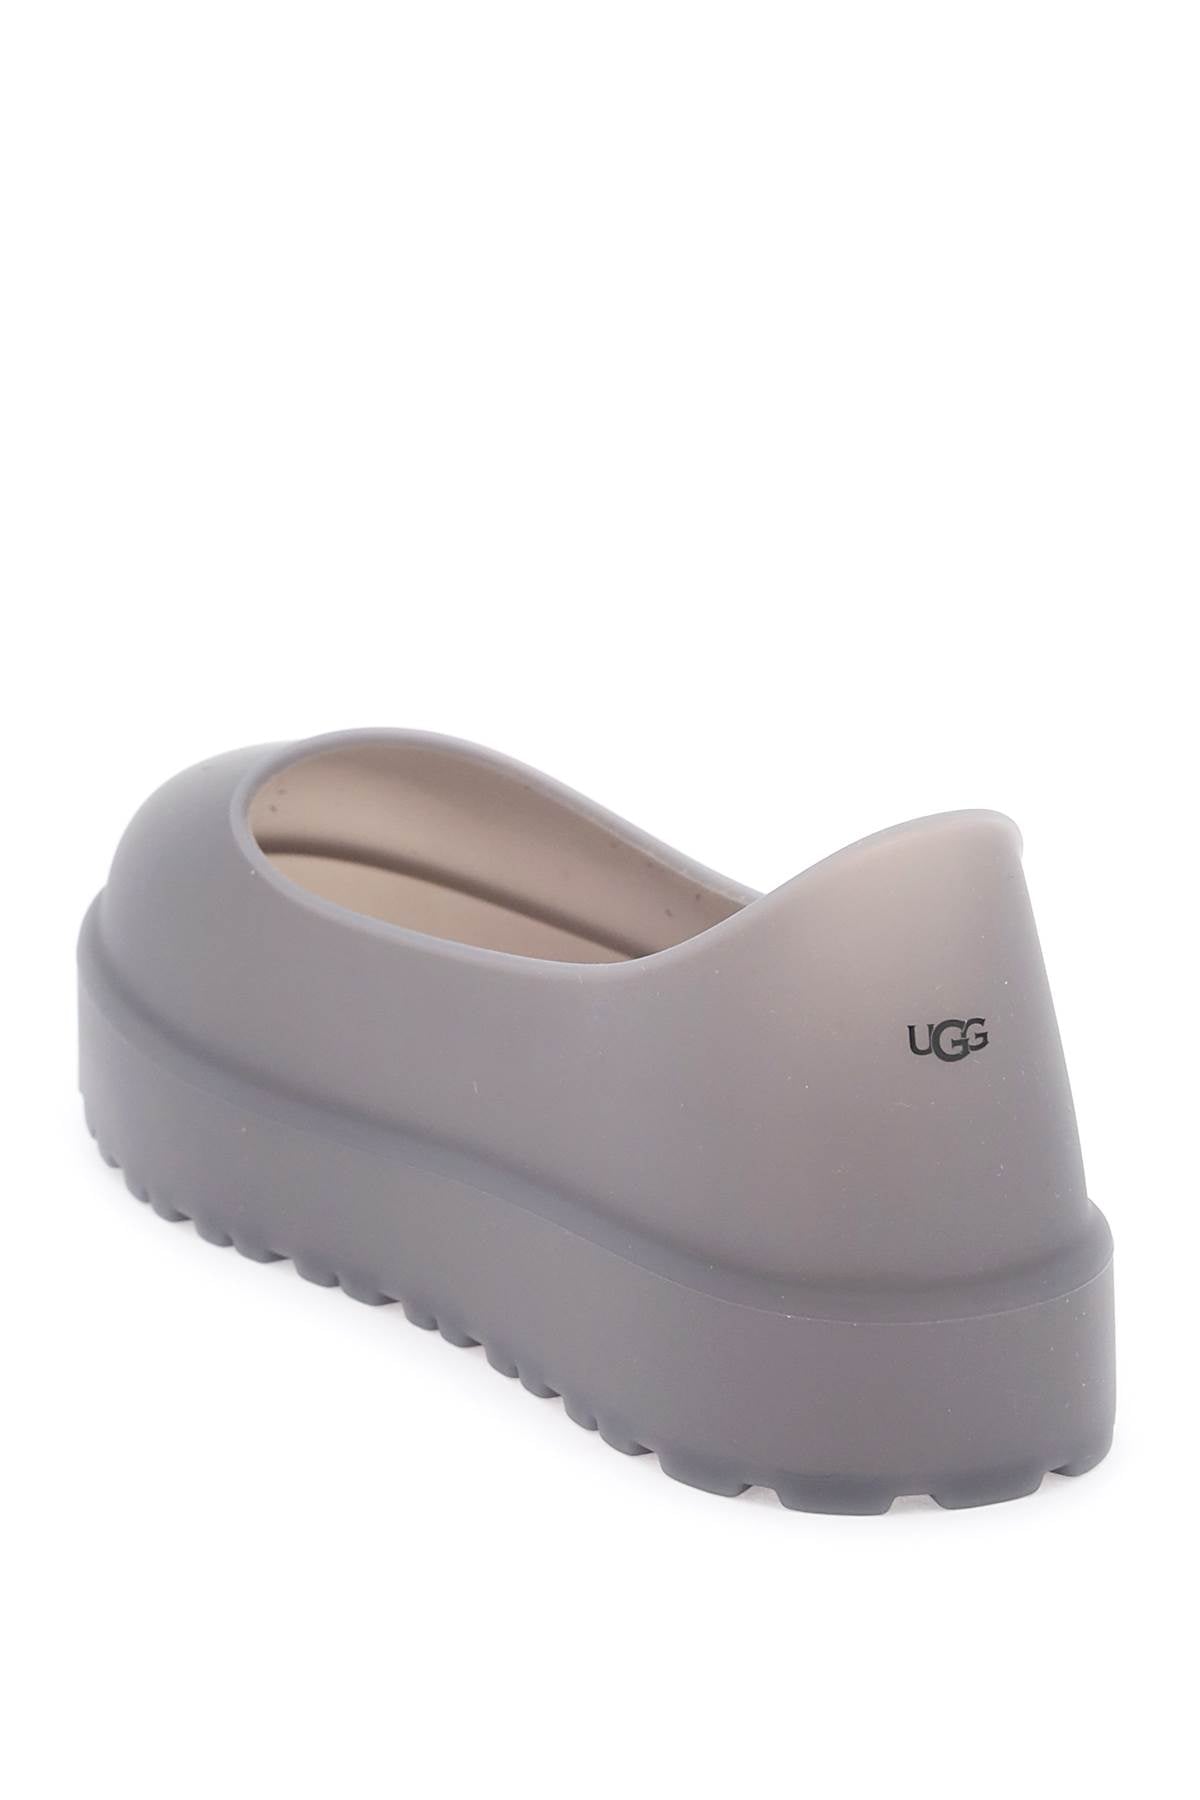 Ugg uggguard shoe protection-2